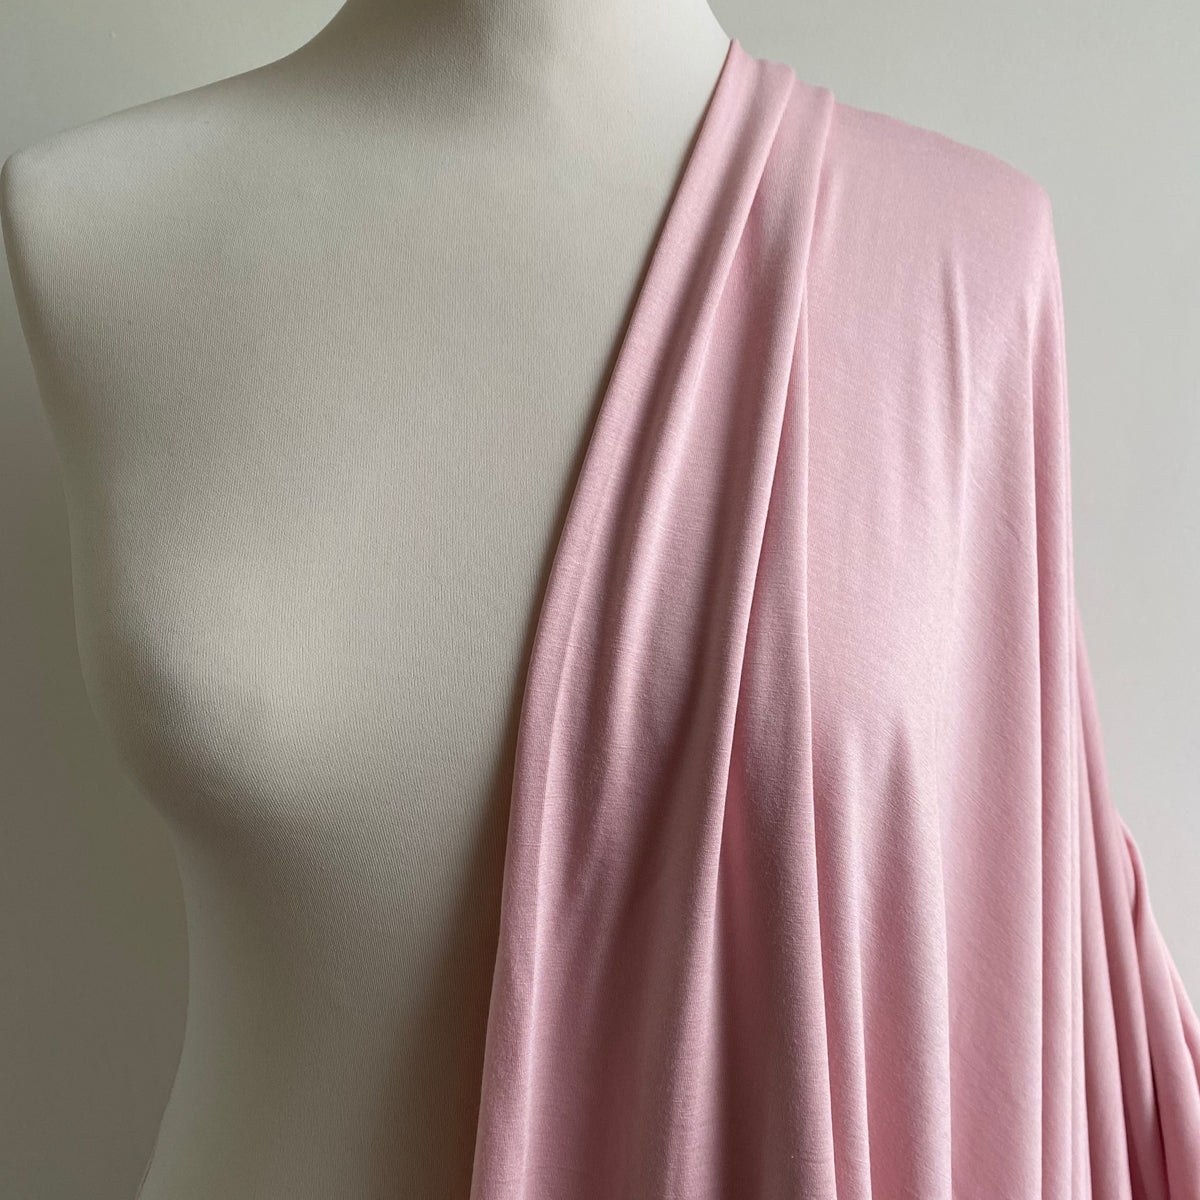 Bamboo Jersey Fabric - Peachskin - Priced per 0.5 metre